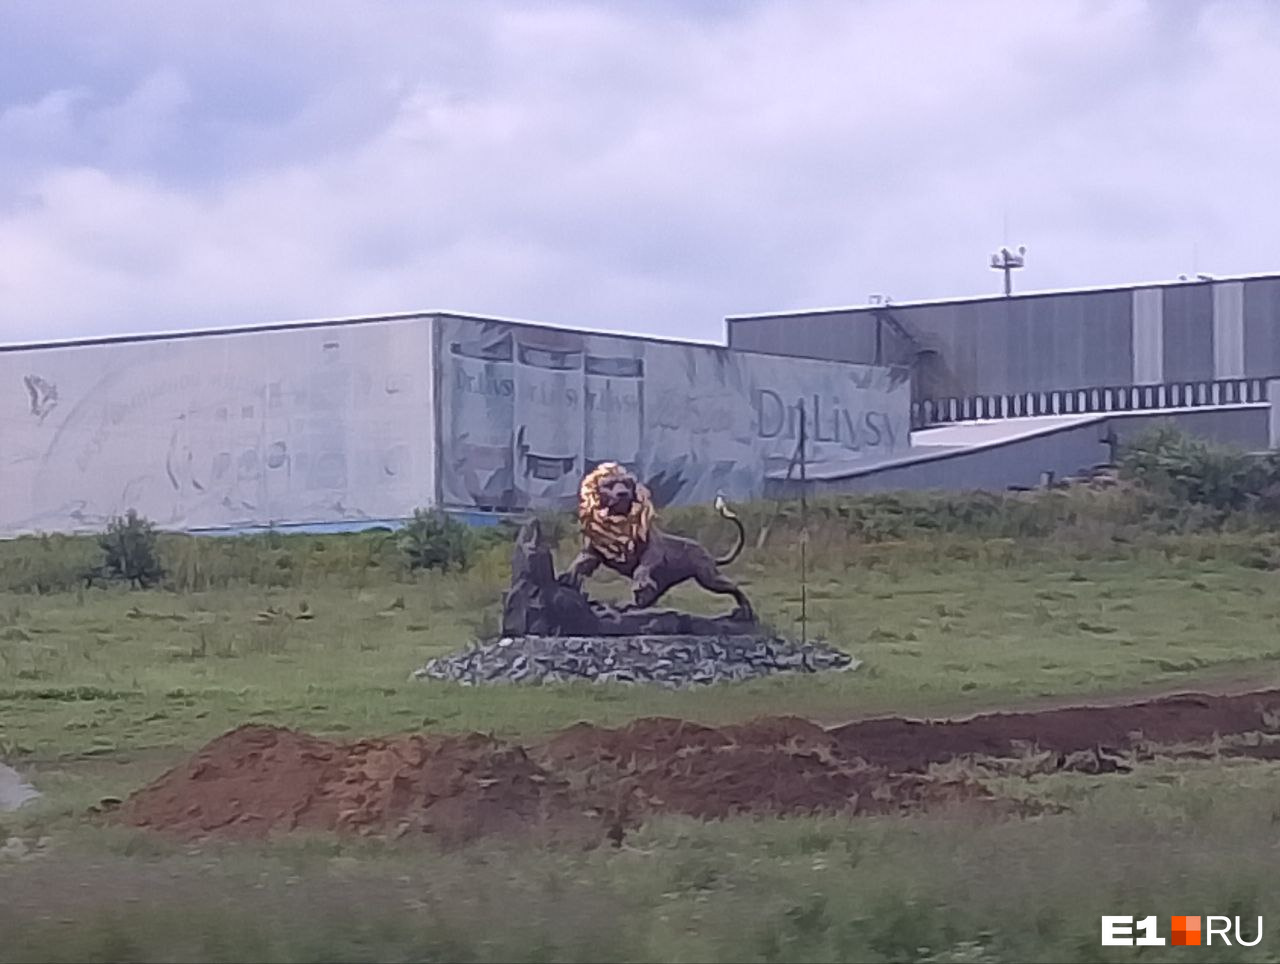 Красотка в золотой каске показала, как «Сима-ленд» строит мини-город под Екатеринбургом